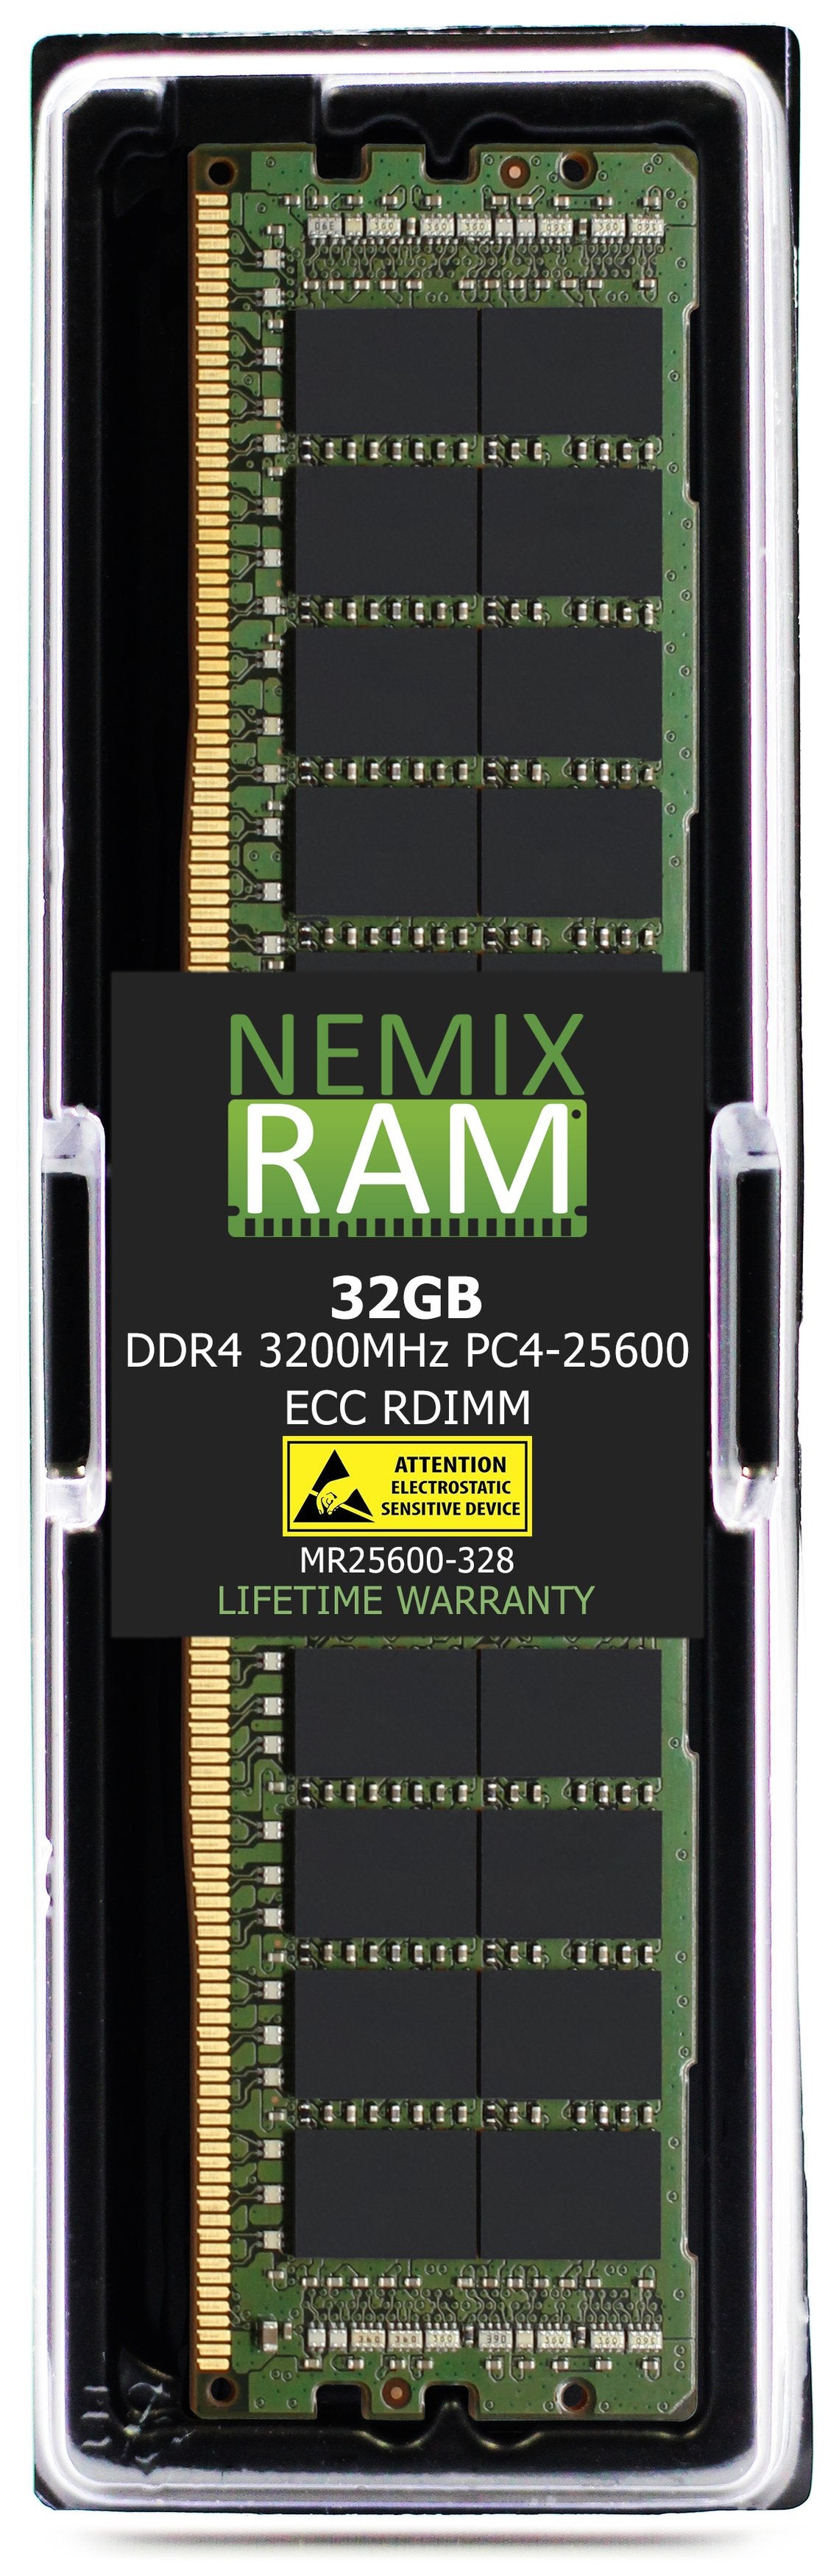 32GB DDR4 3200MHZ PC4-25600 RDIMM Compatible with Supermicro MEM-DR432L-CL05-ER32